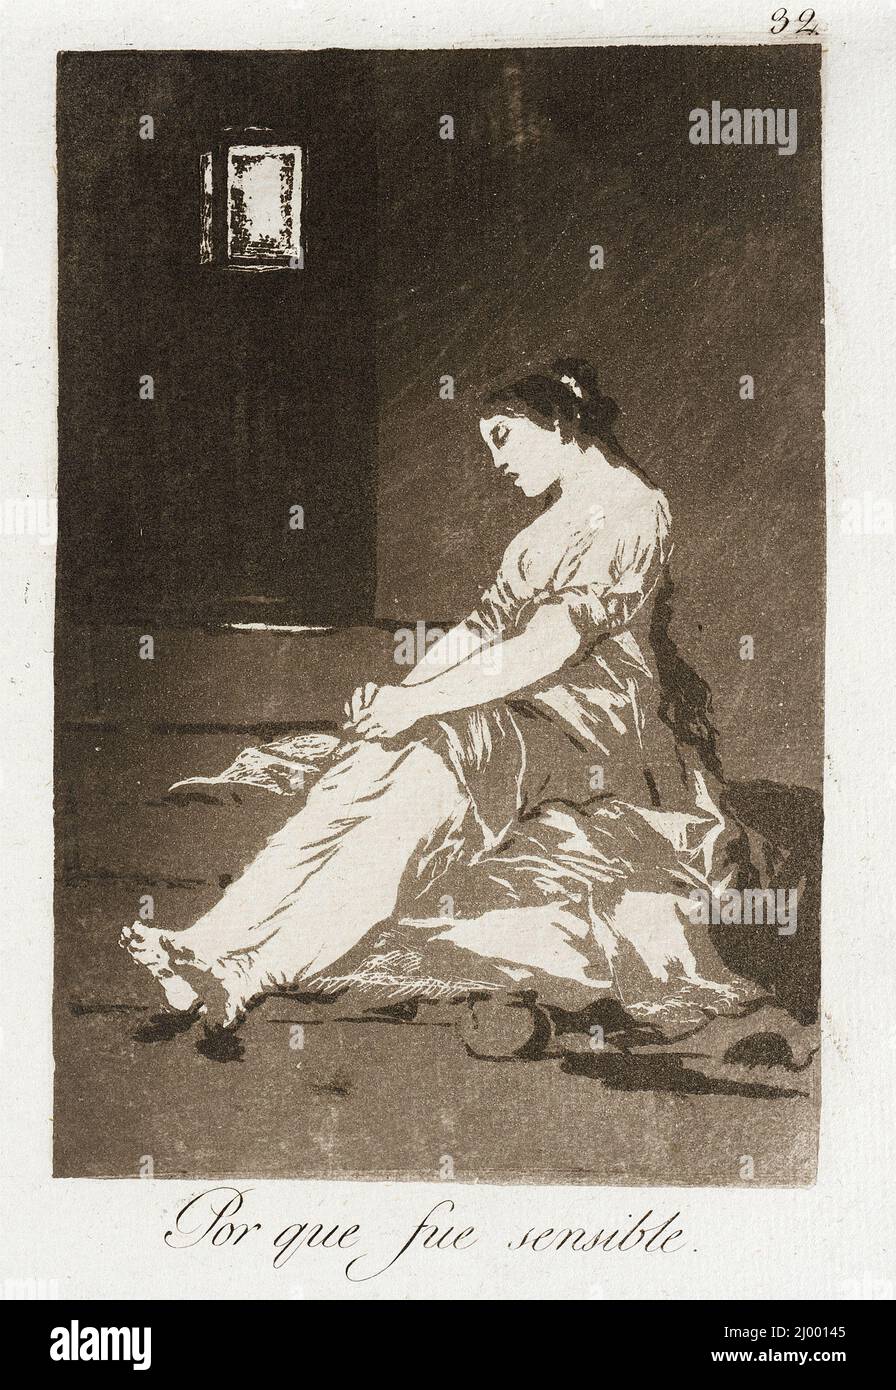 Weil sie empfänglich war. Francisco Goya y Lucientes (Spanien, Fuendetodos, 1746-1828). Spanien, 1799. Ausdrucke. Aquatinta Stockfoto